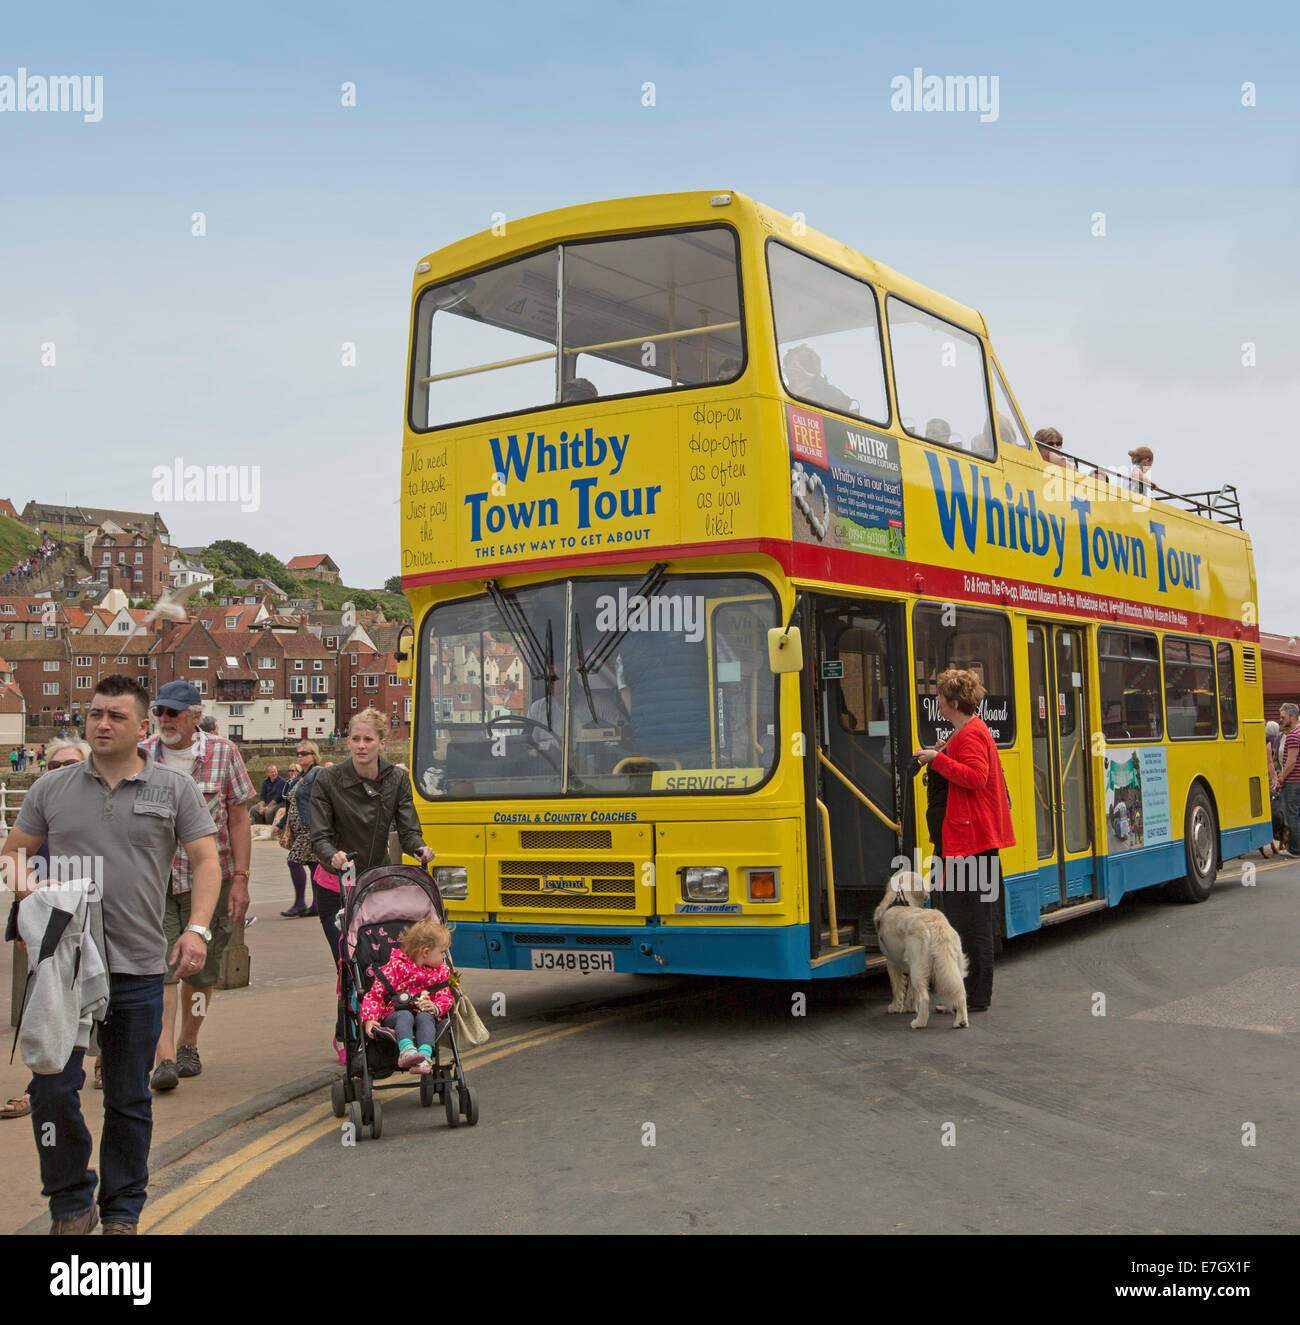 Giallo a sommità aperta double decker bus tour, popolare attrazione turistica in inglese città costiera di Whitby,con i passeggeri con il cane in attesa di bordo Foto Stock